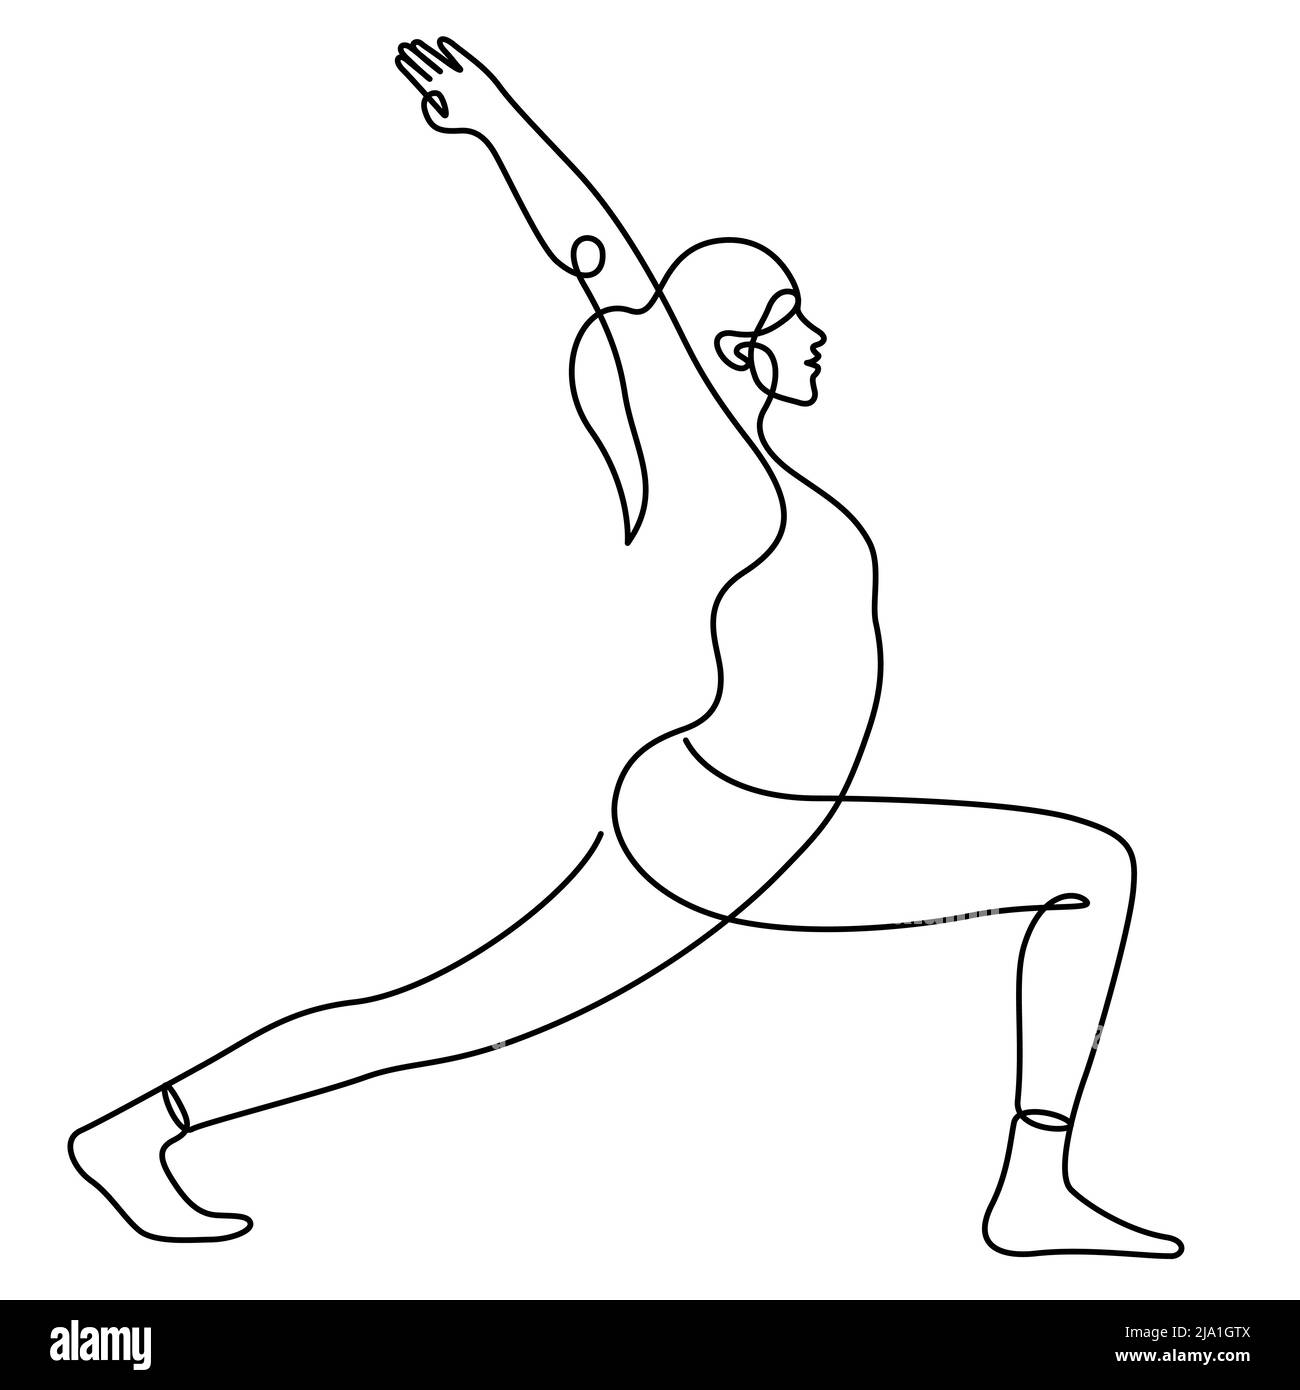 Frau in Krieger Pose Yoga balancing Vektor Illustration. Eine Linienzeichnung und durchgehender Stil auf weißem Hintergrund isoliert. Stock Vektor